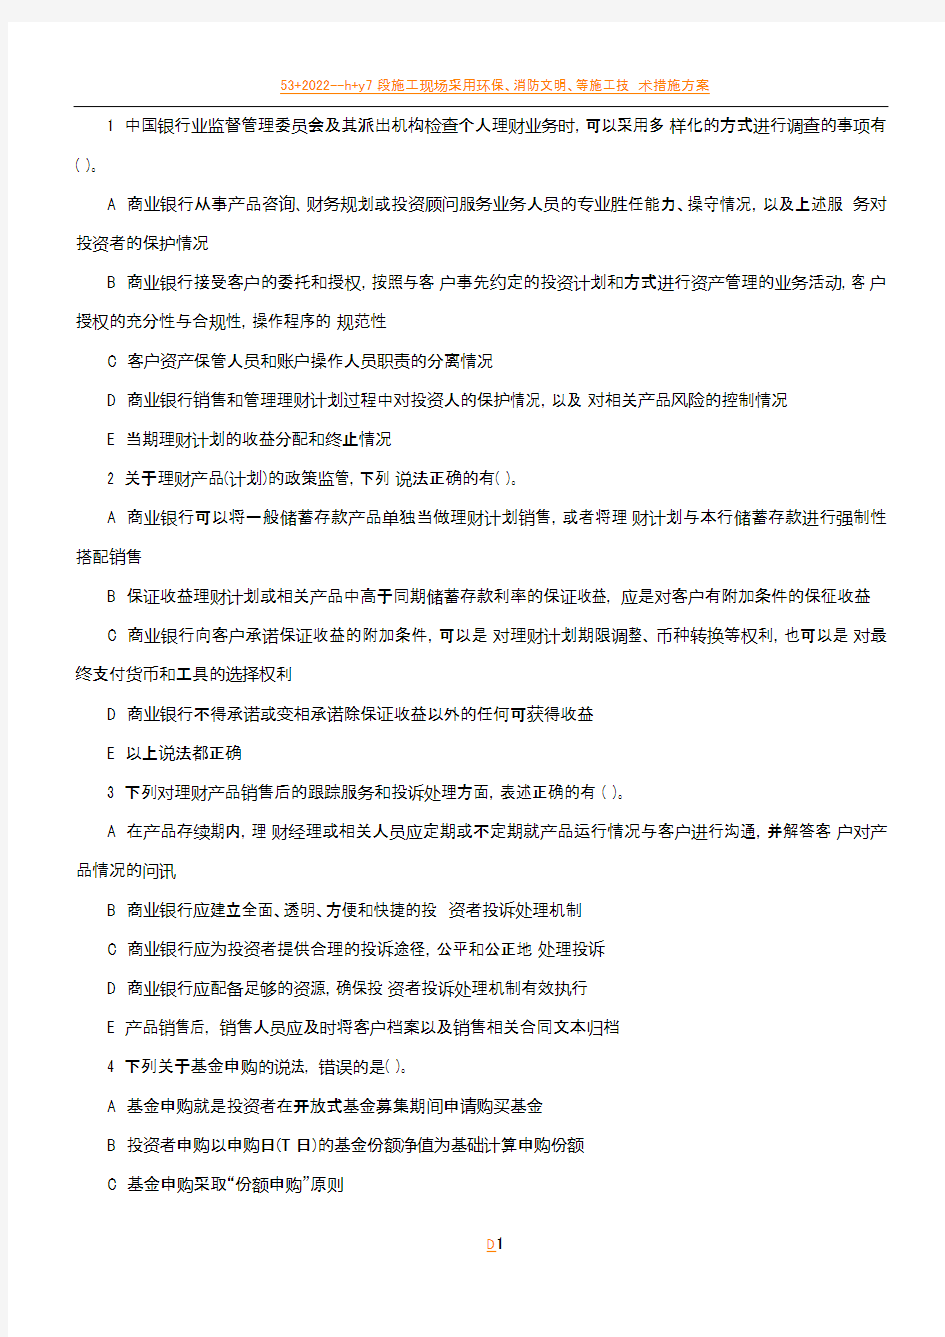 2014年云南省农村信用社笔试招聘模拟测试题